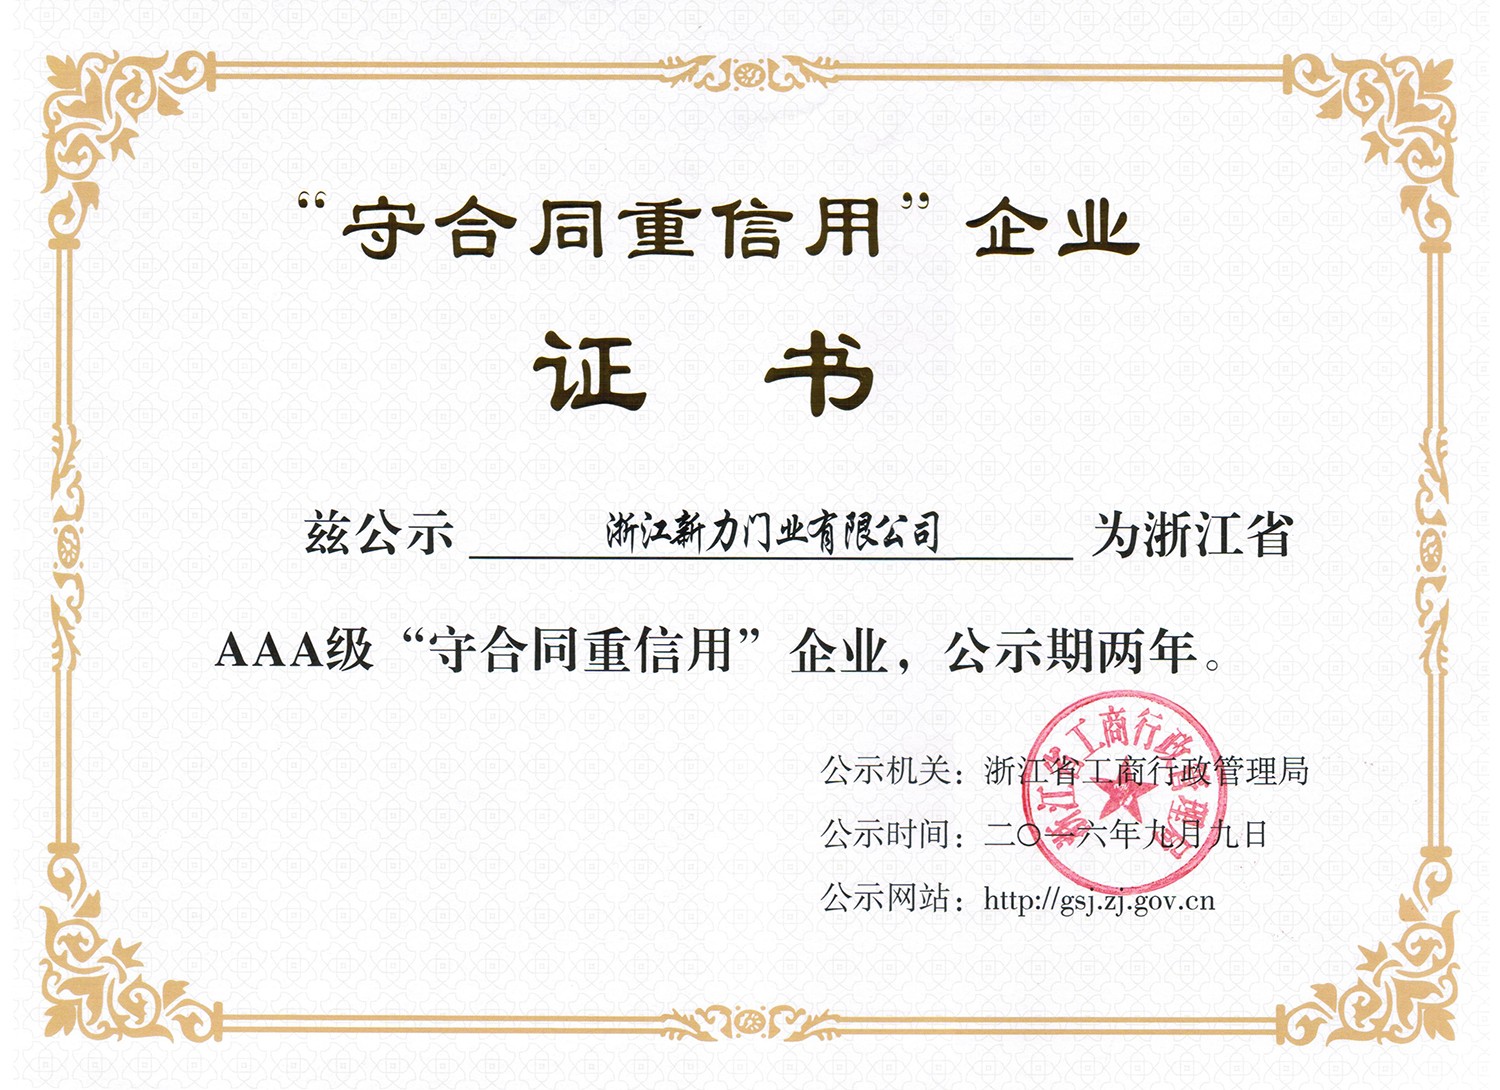 AAA Enterprise Certificate 2